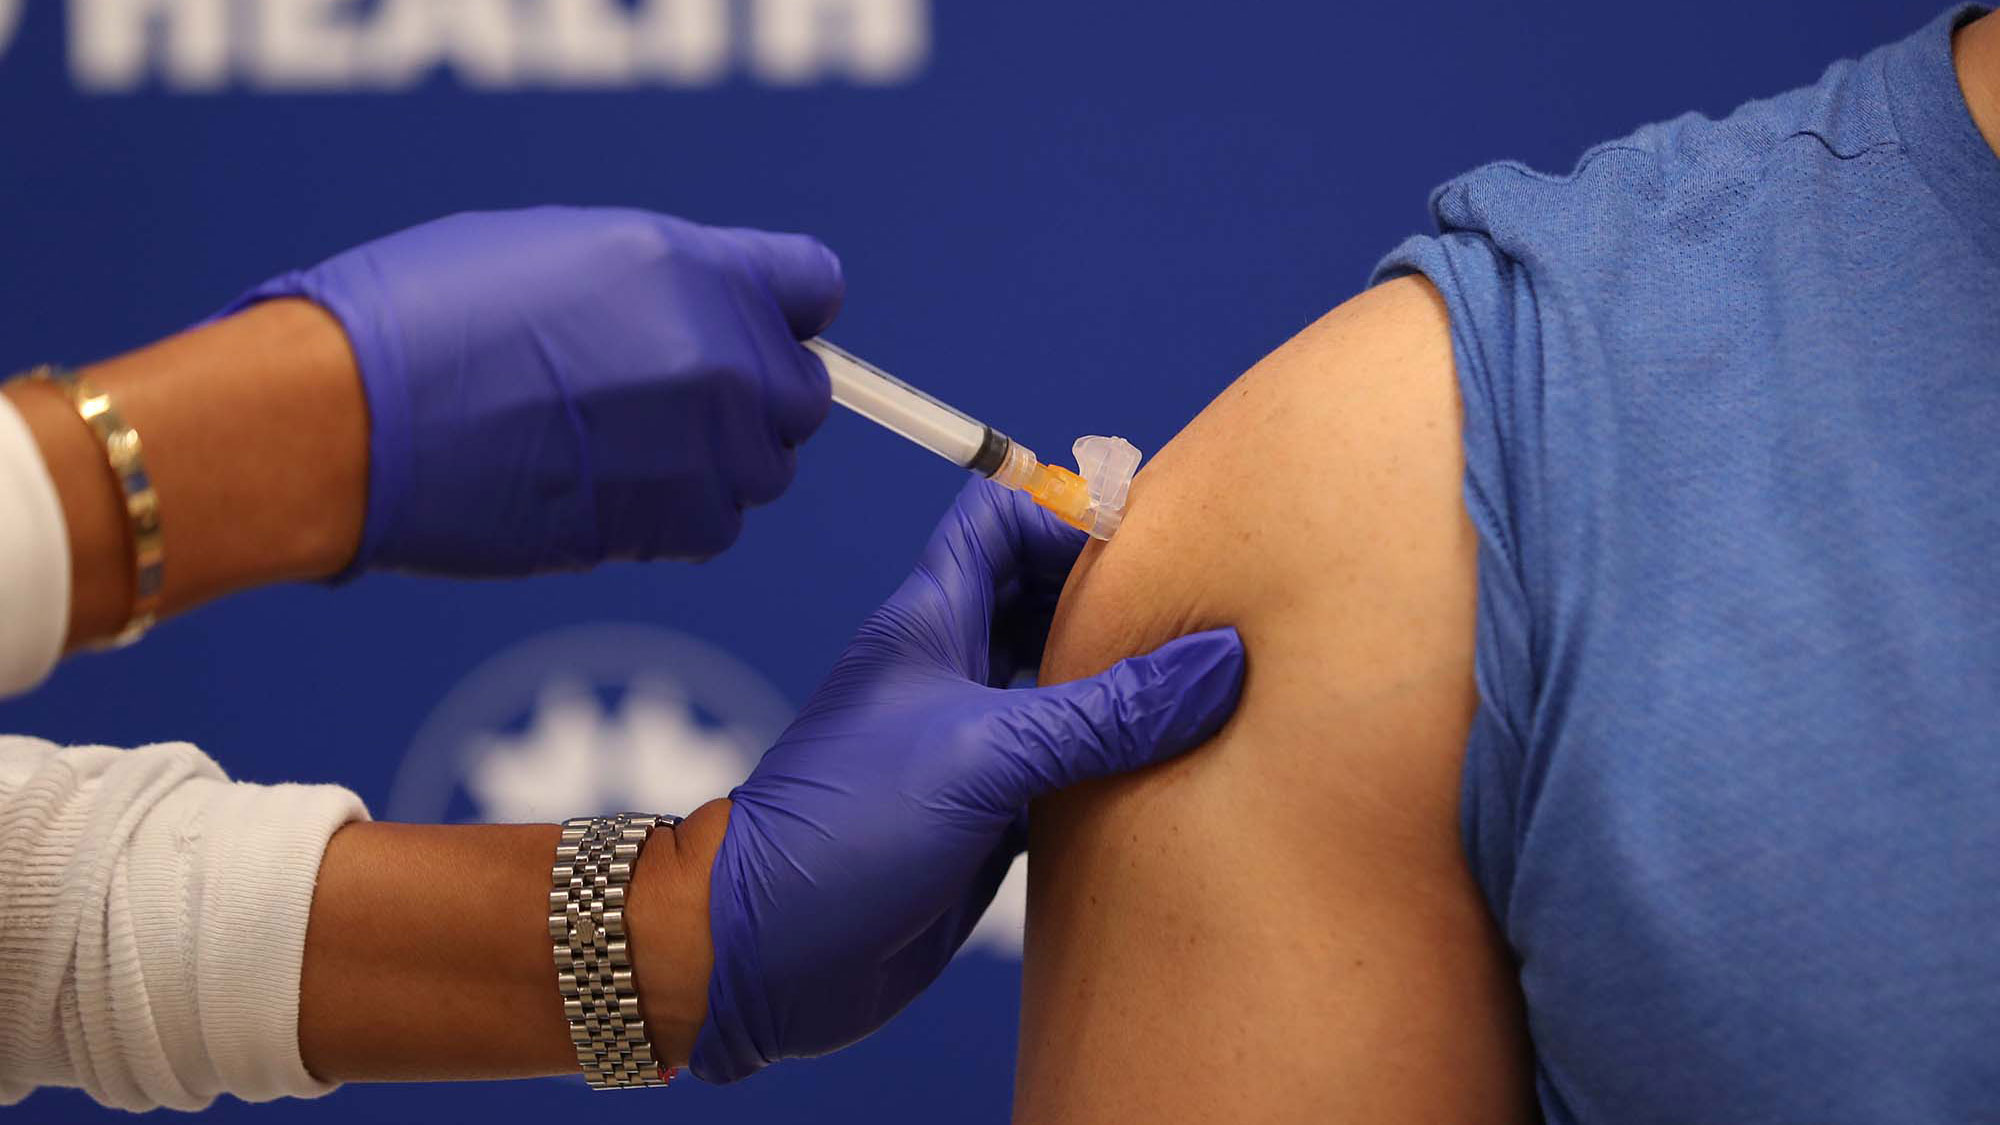 be vaccine misinformation undermine efforts immunize